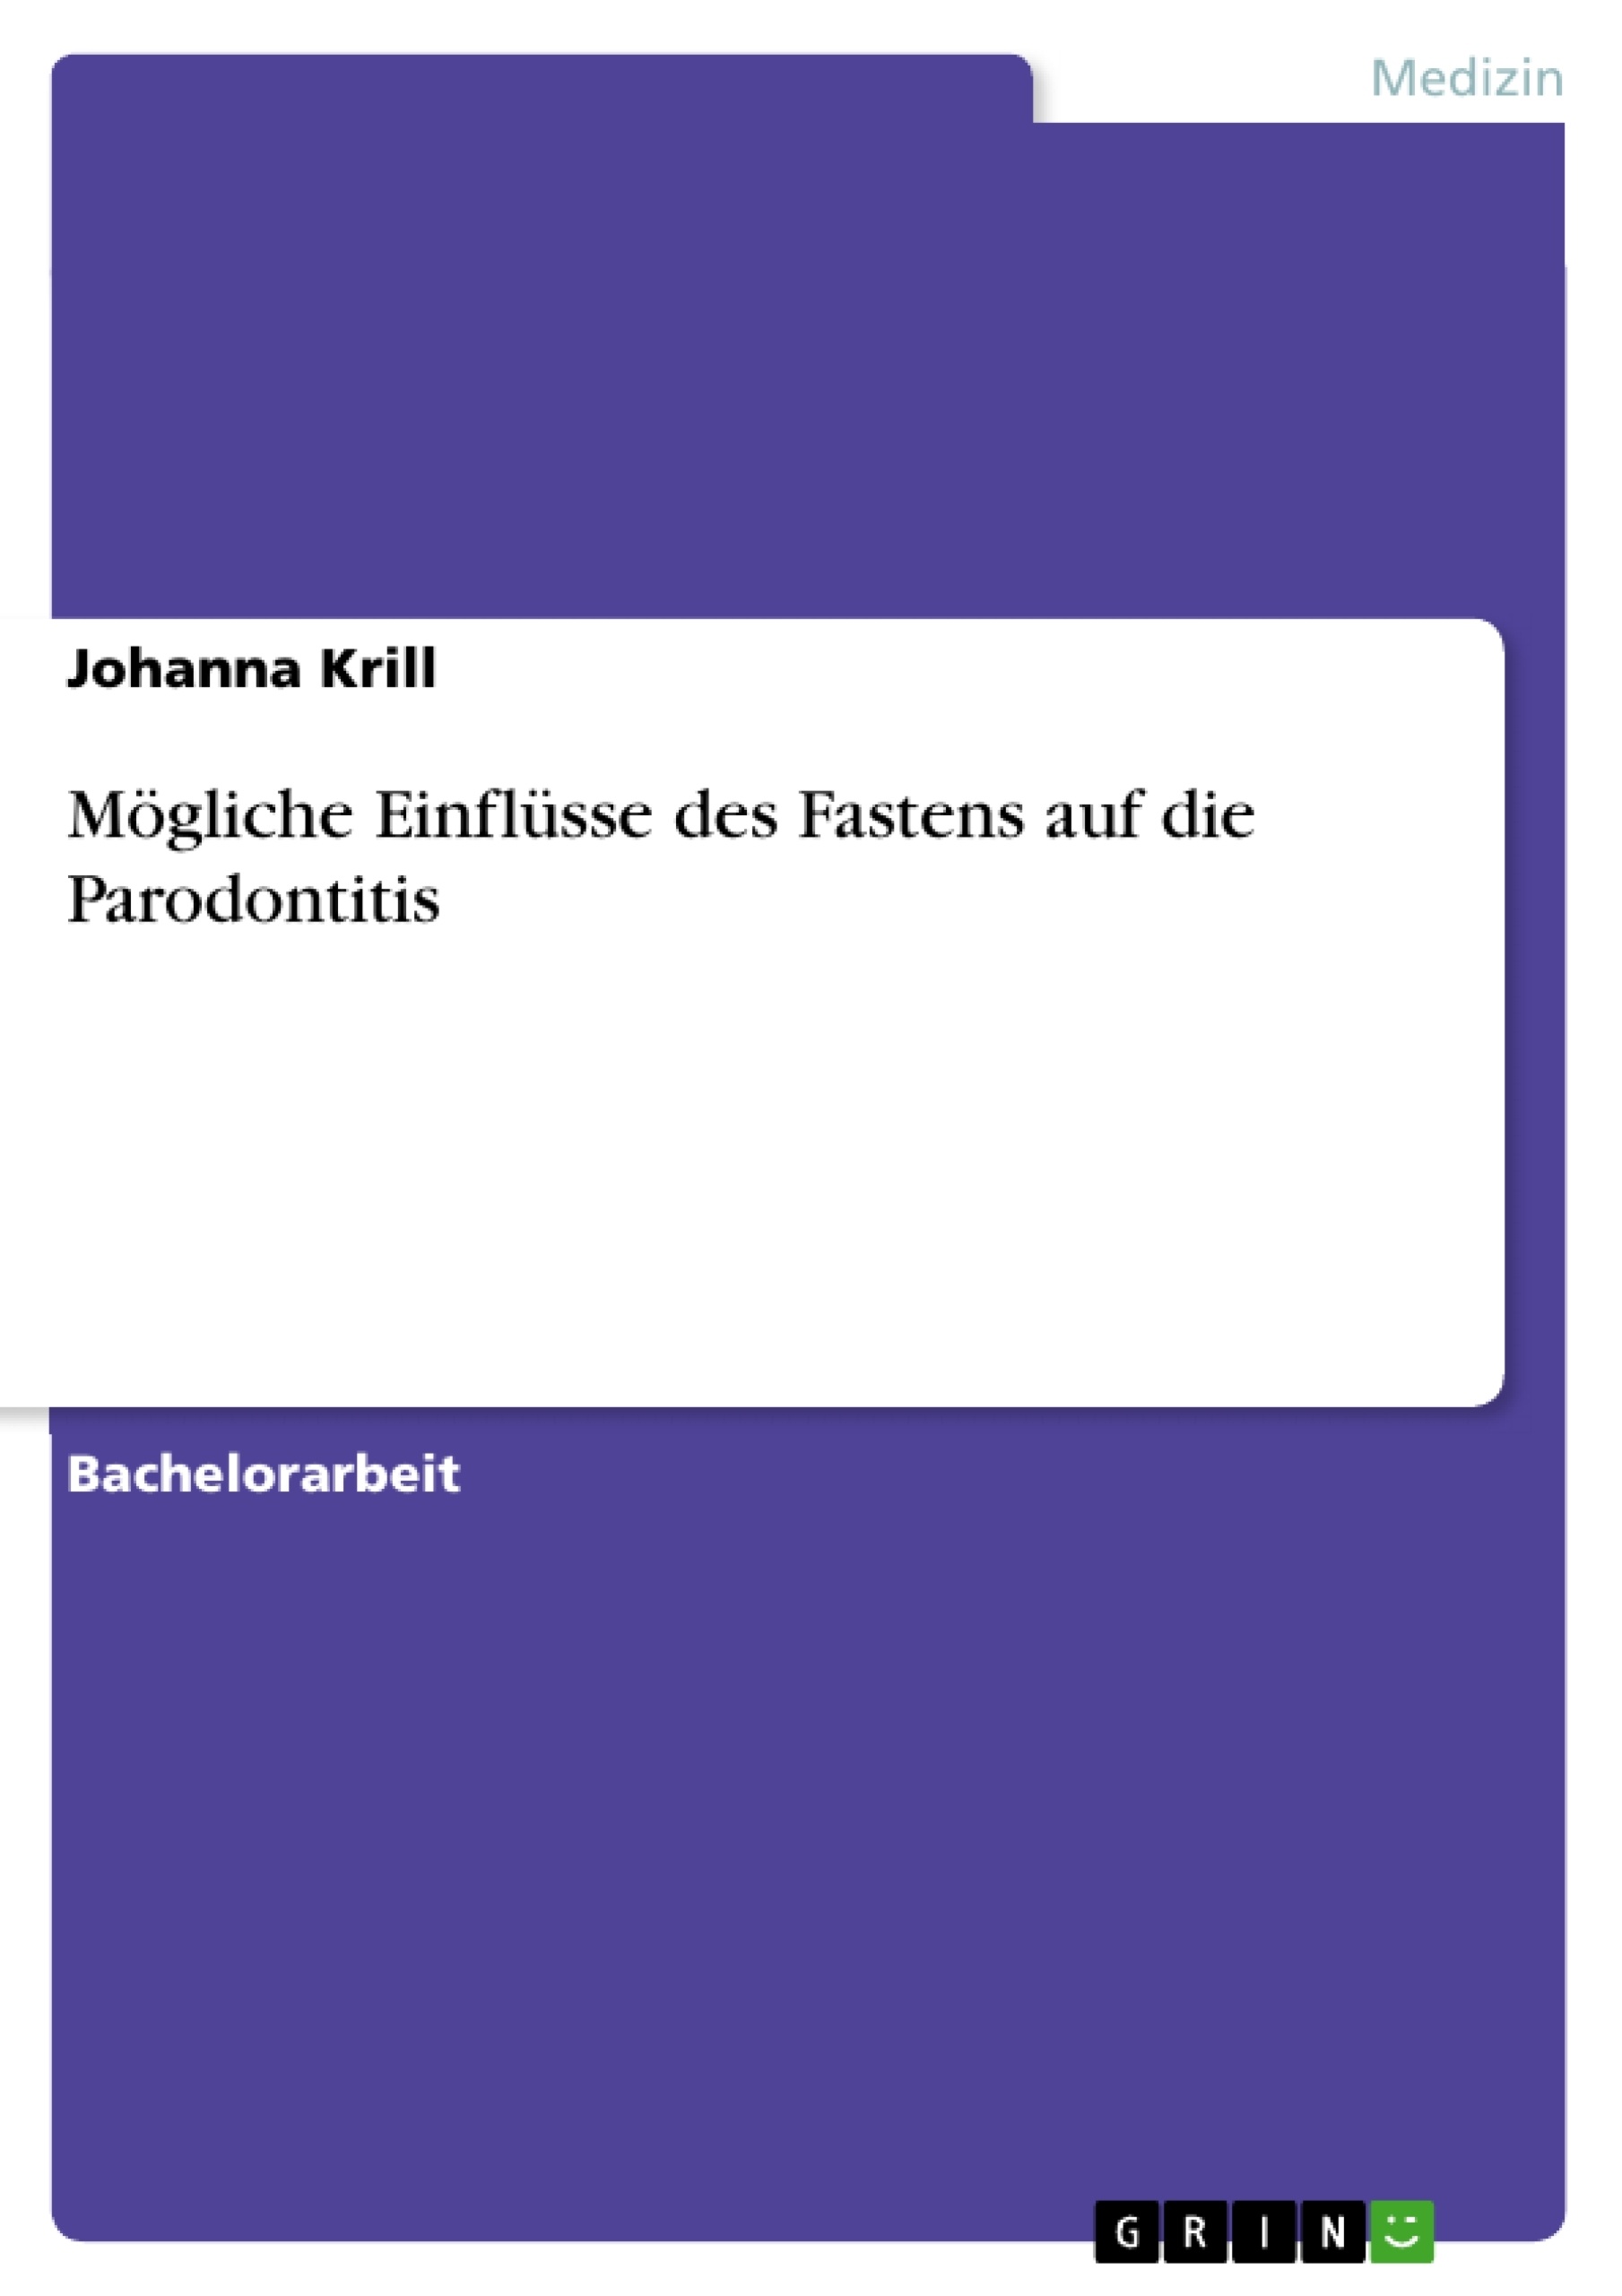 Título: Mögliche Einflüsse des Fastens auf die Parodontitis